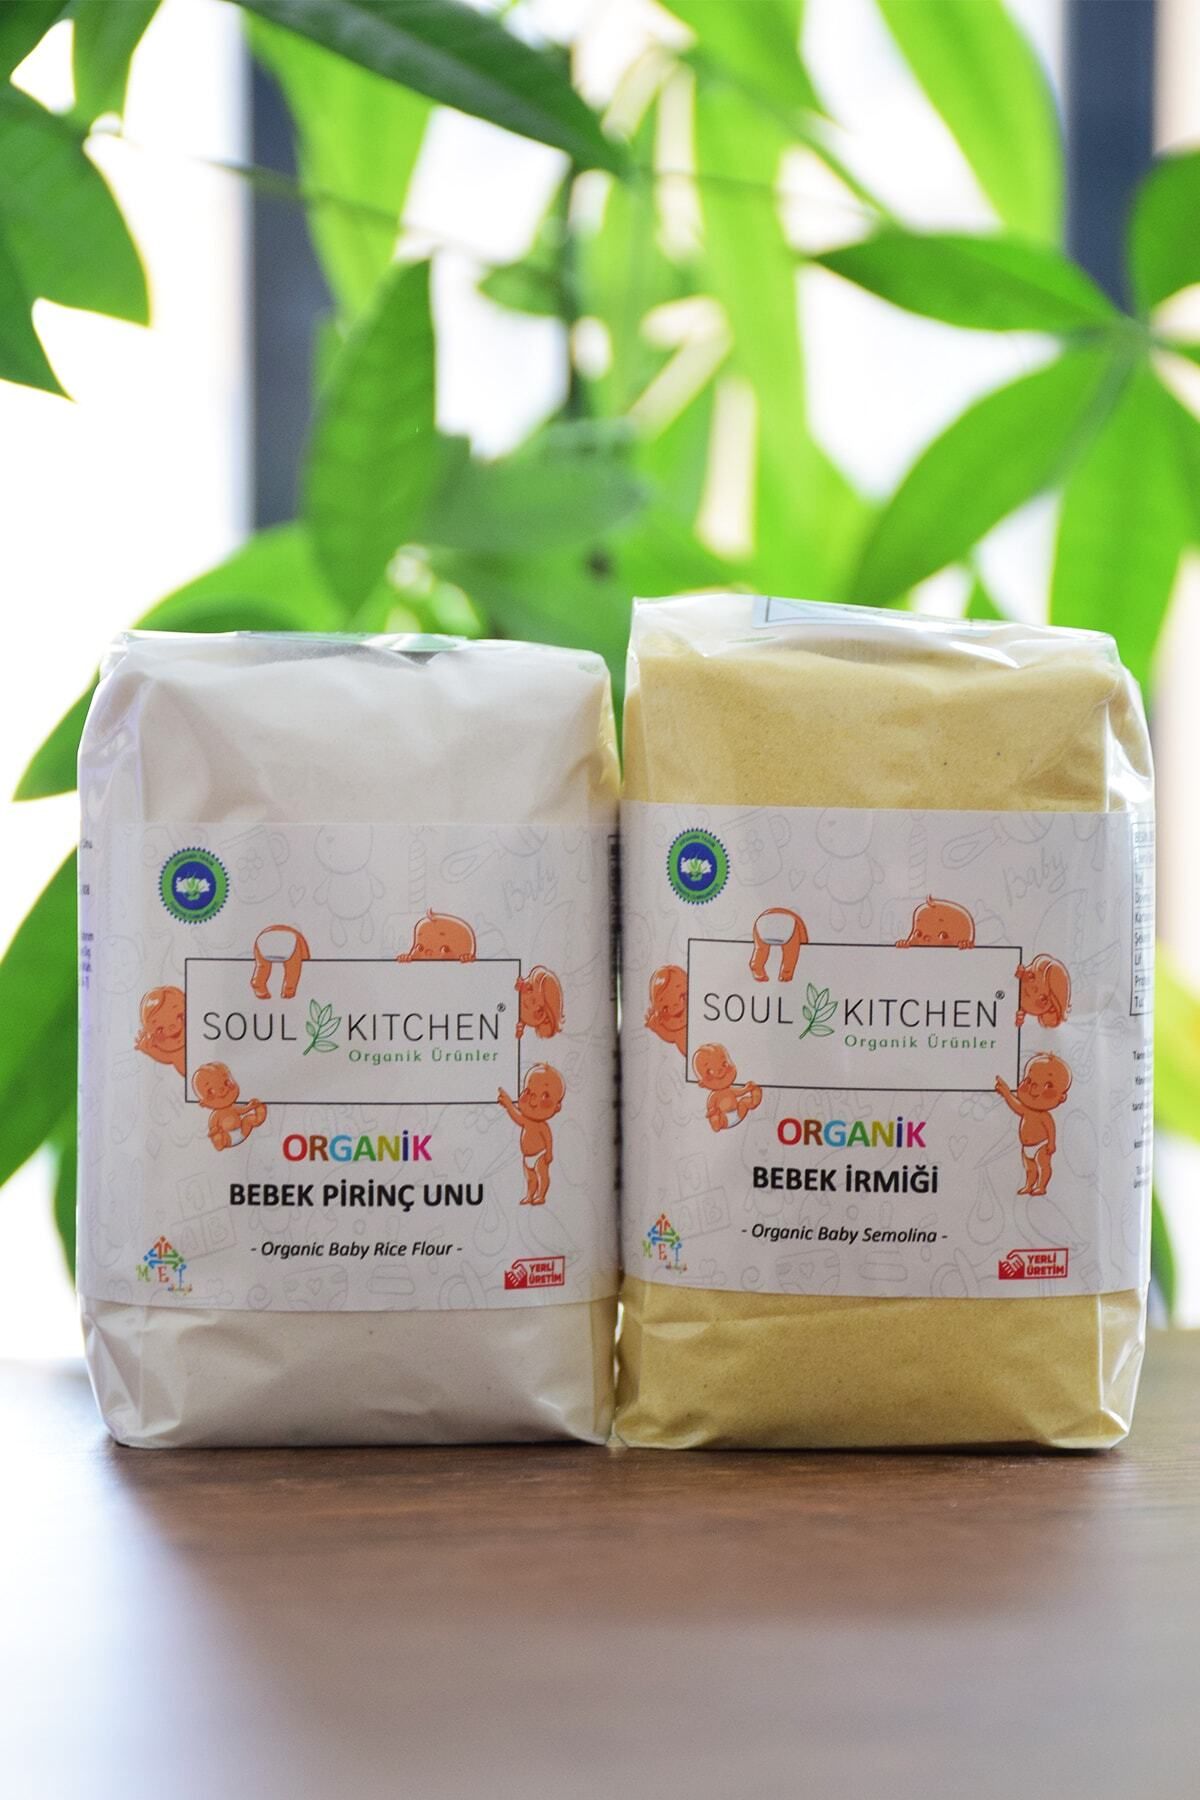 Soul Kitchen Organik Ürünler Organik Bebek İrmiği + Organik Bebek Pirinç Unu Avantaj Paket (2x250gr)